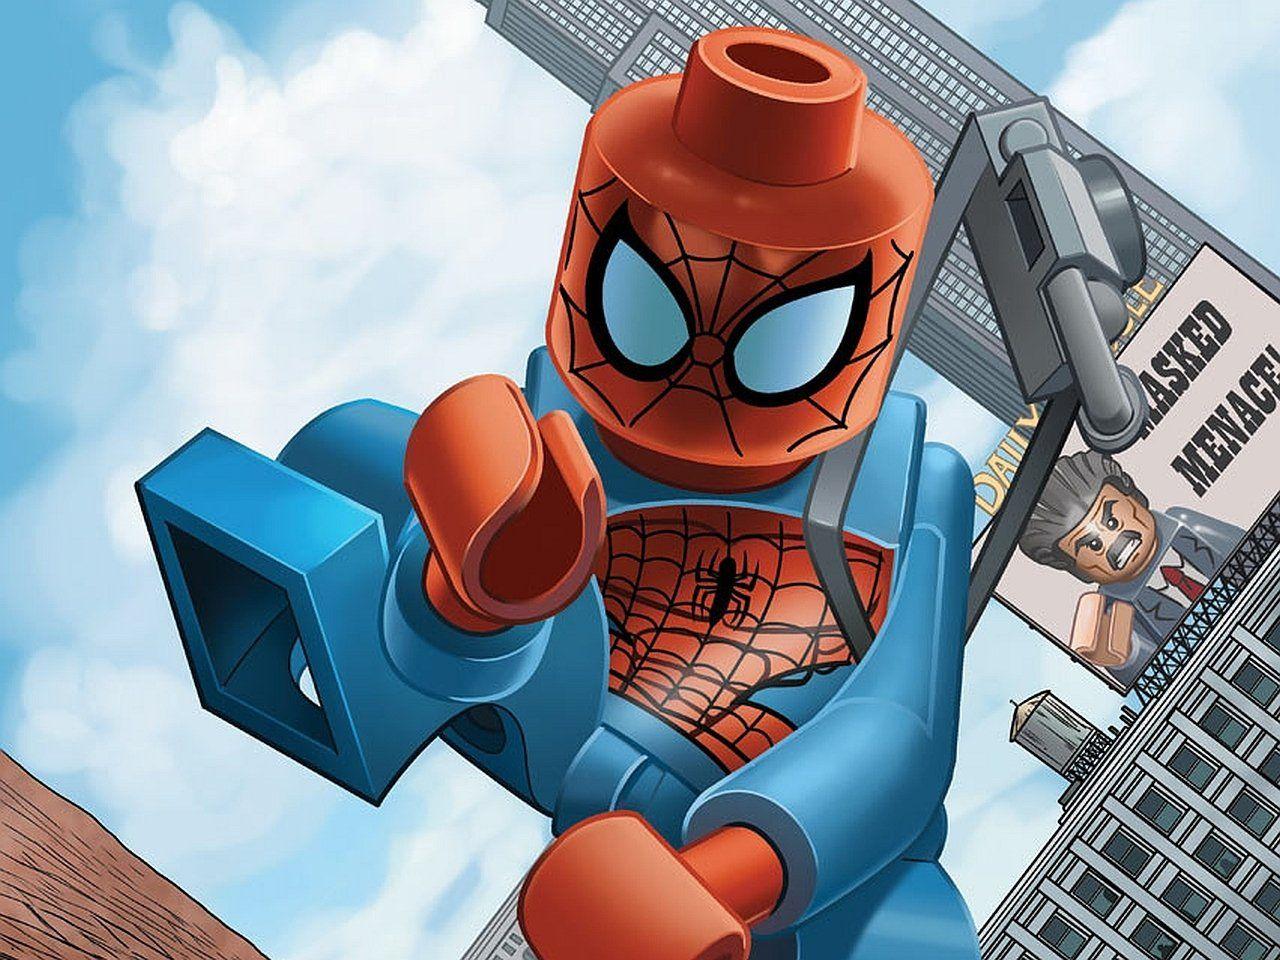 Lego Marvel Super Heroes HD Wallpaper